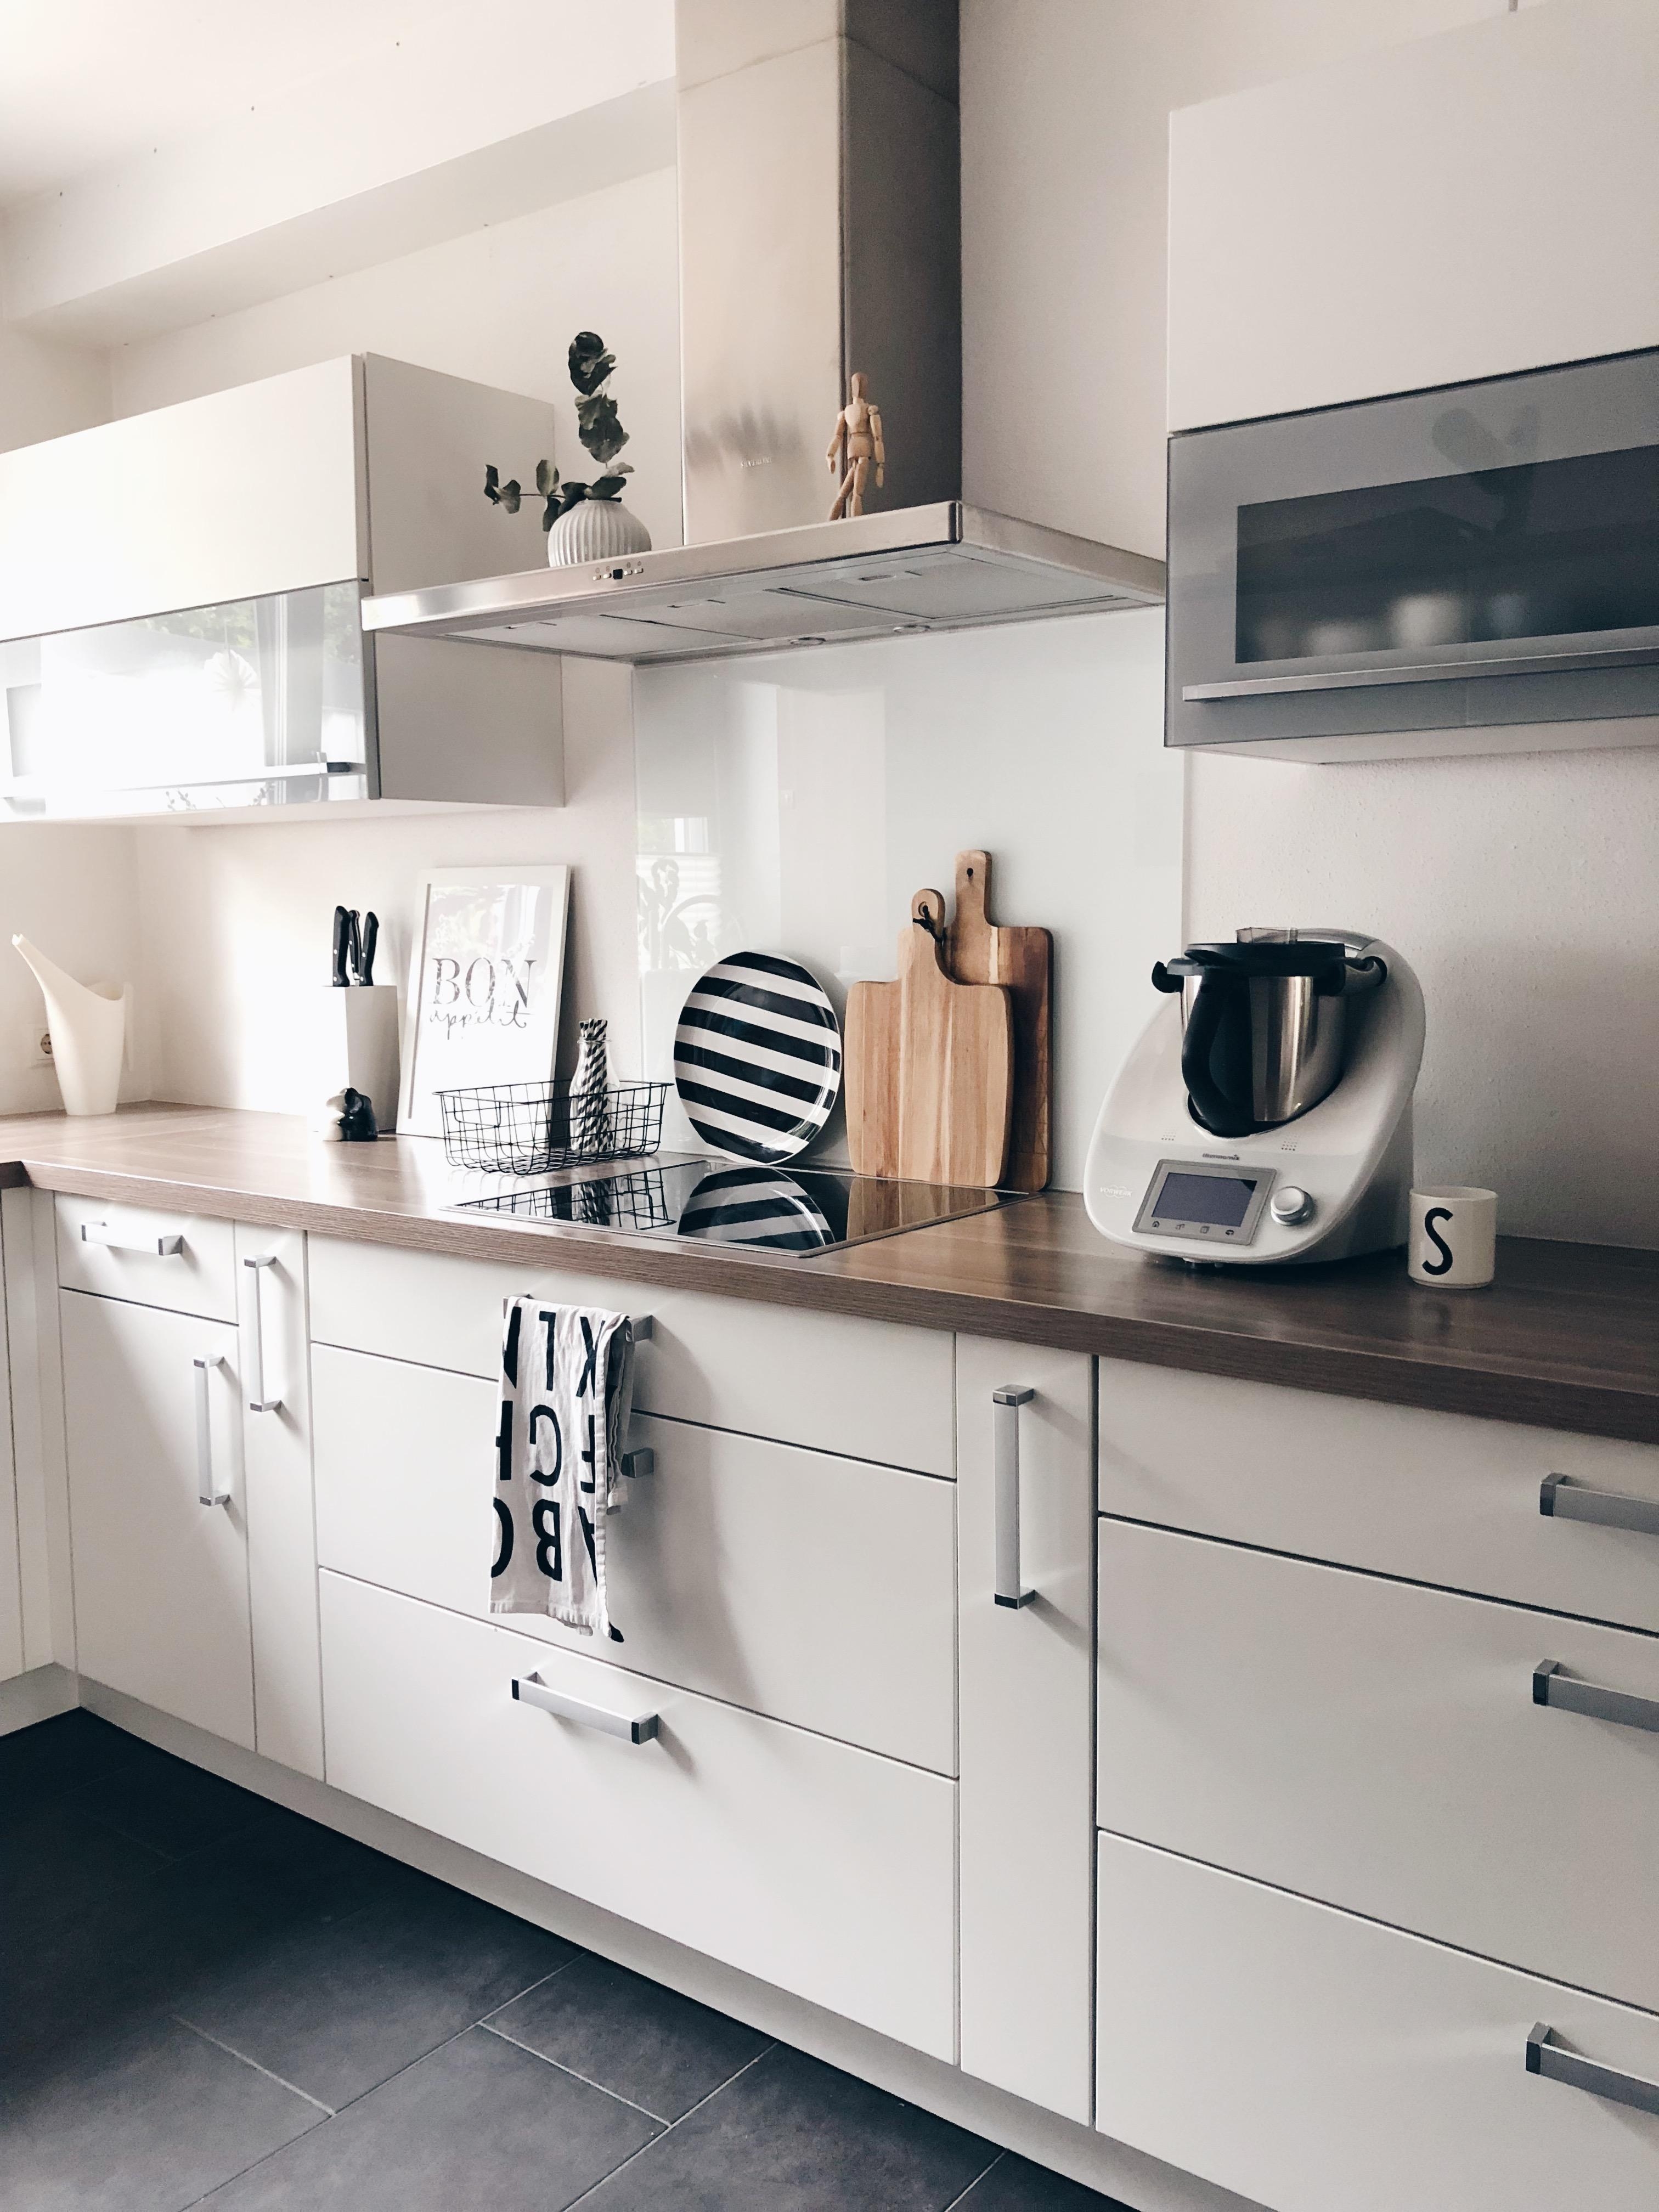 I ❤️ our kitchen #kitchenstories #kitchenlove #blackwhite #clean